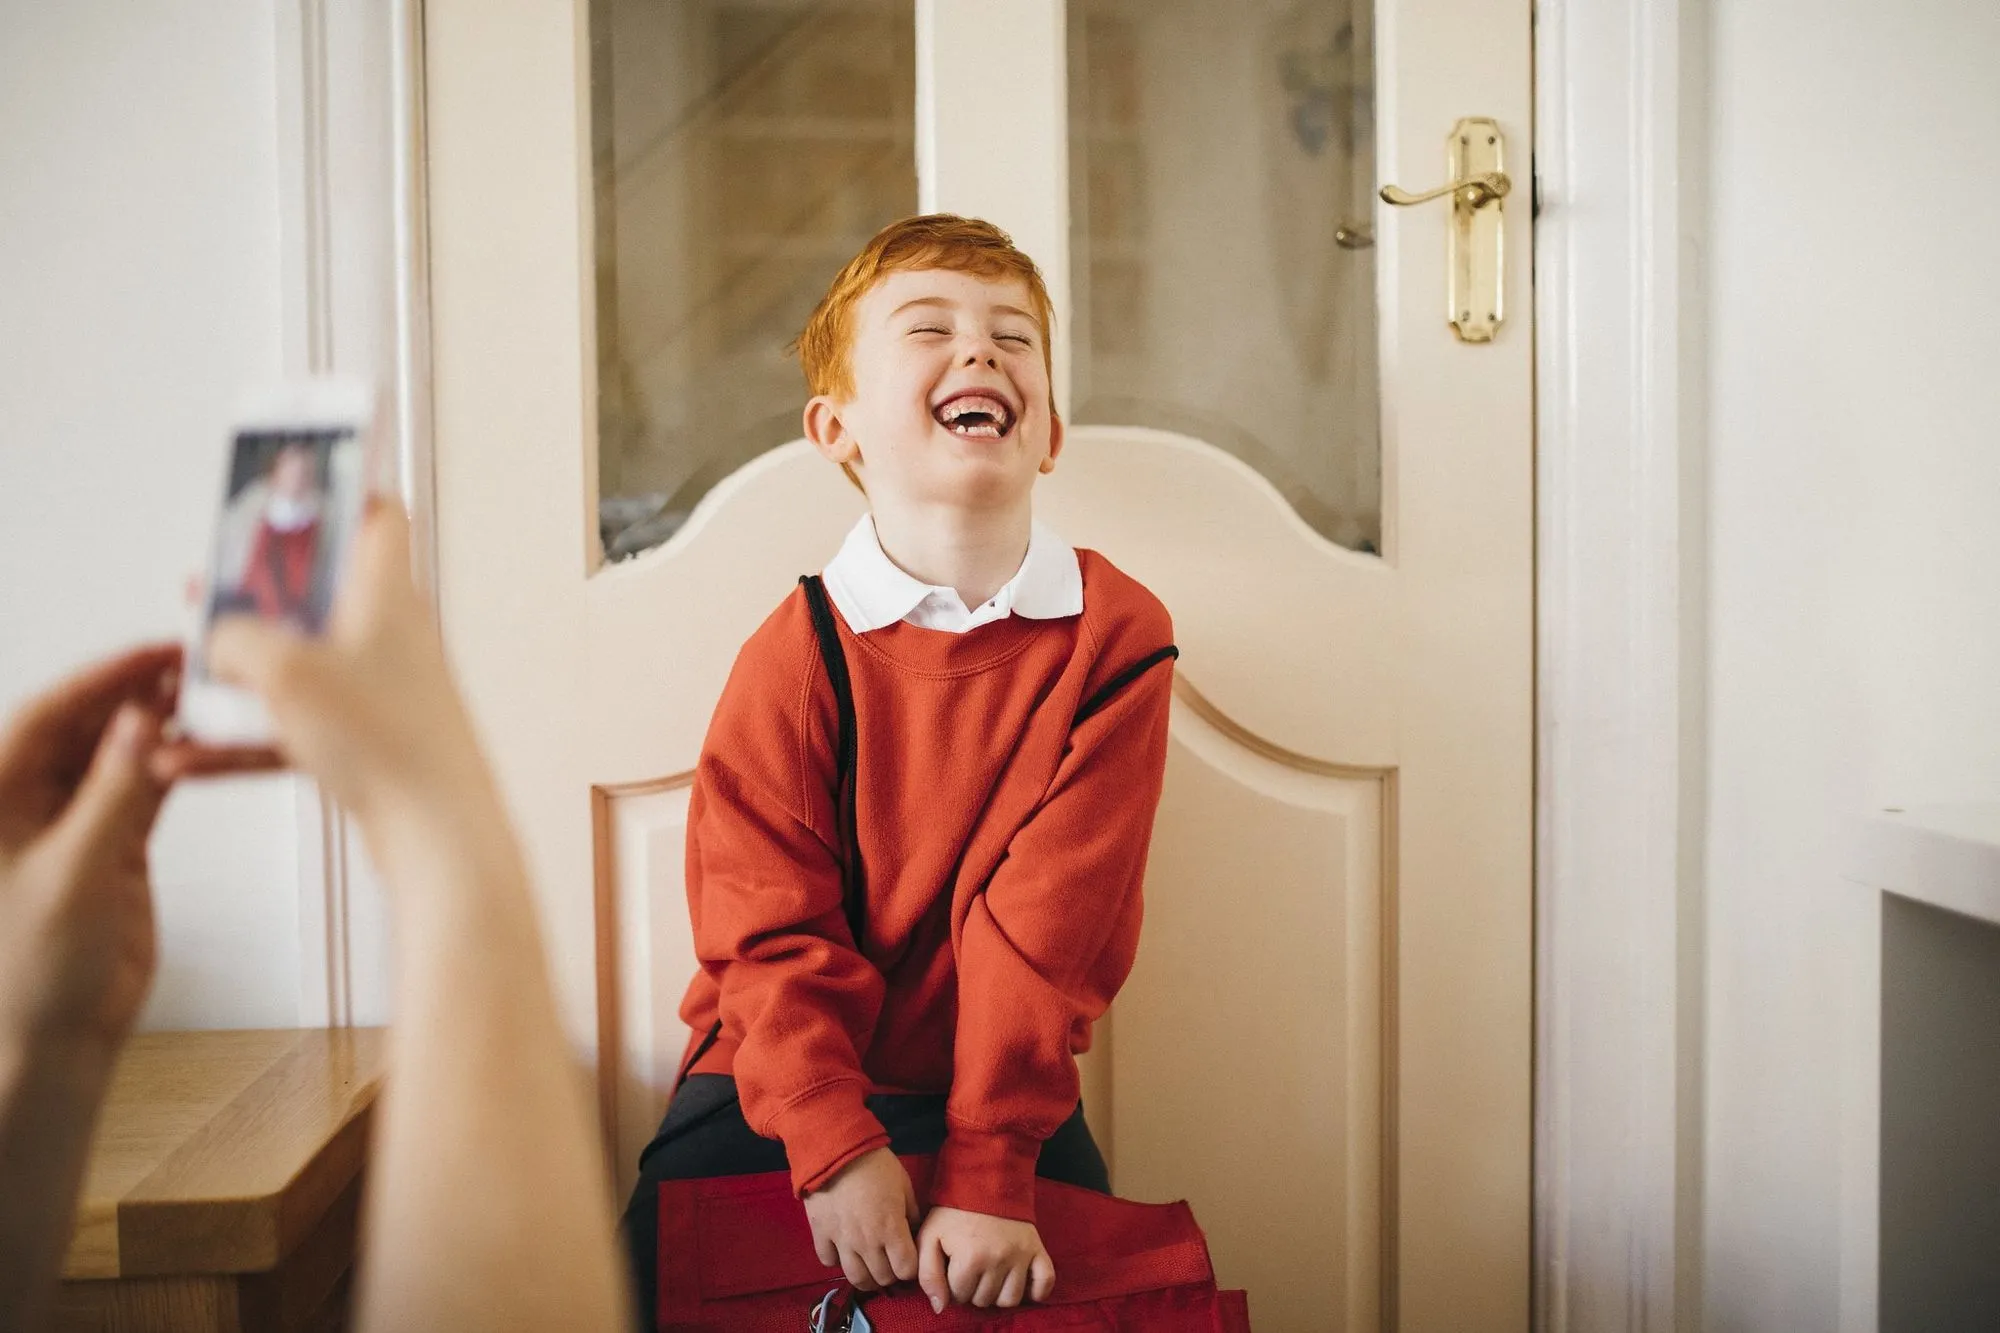 red-haired boy in school uniform posing in front of door